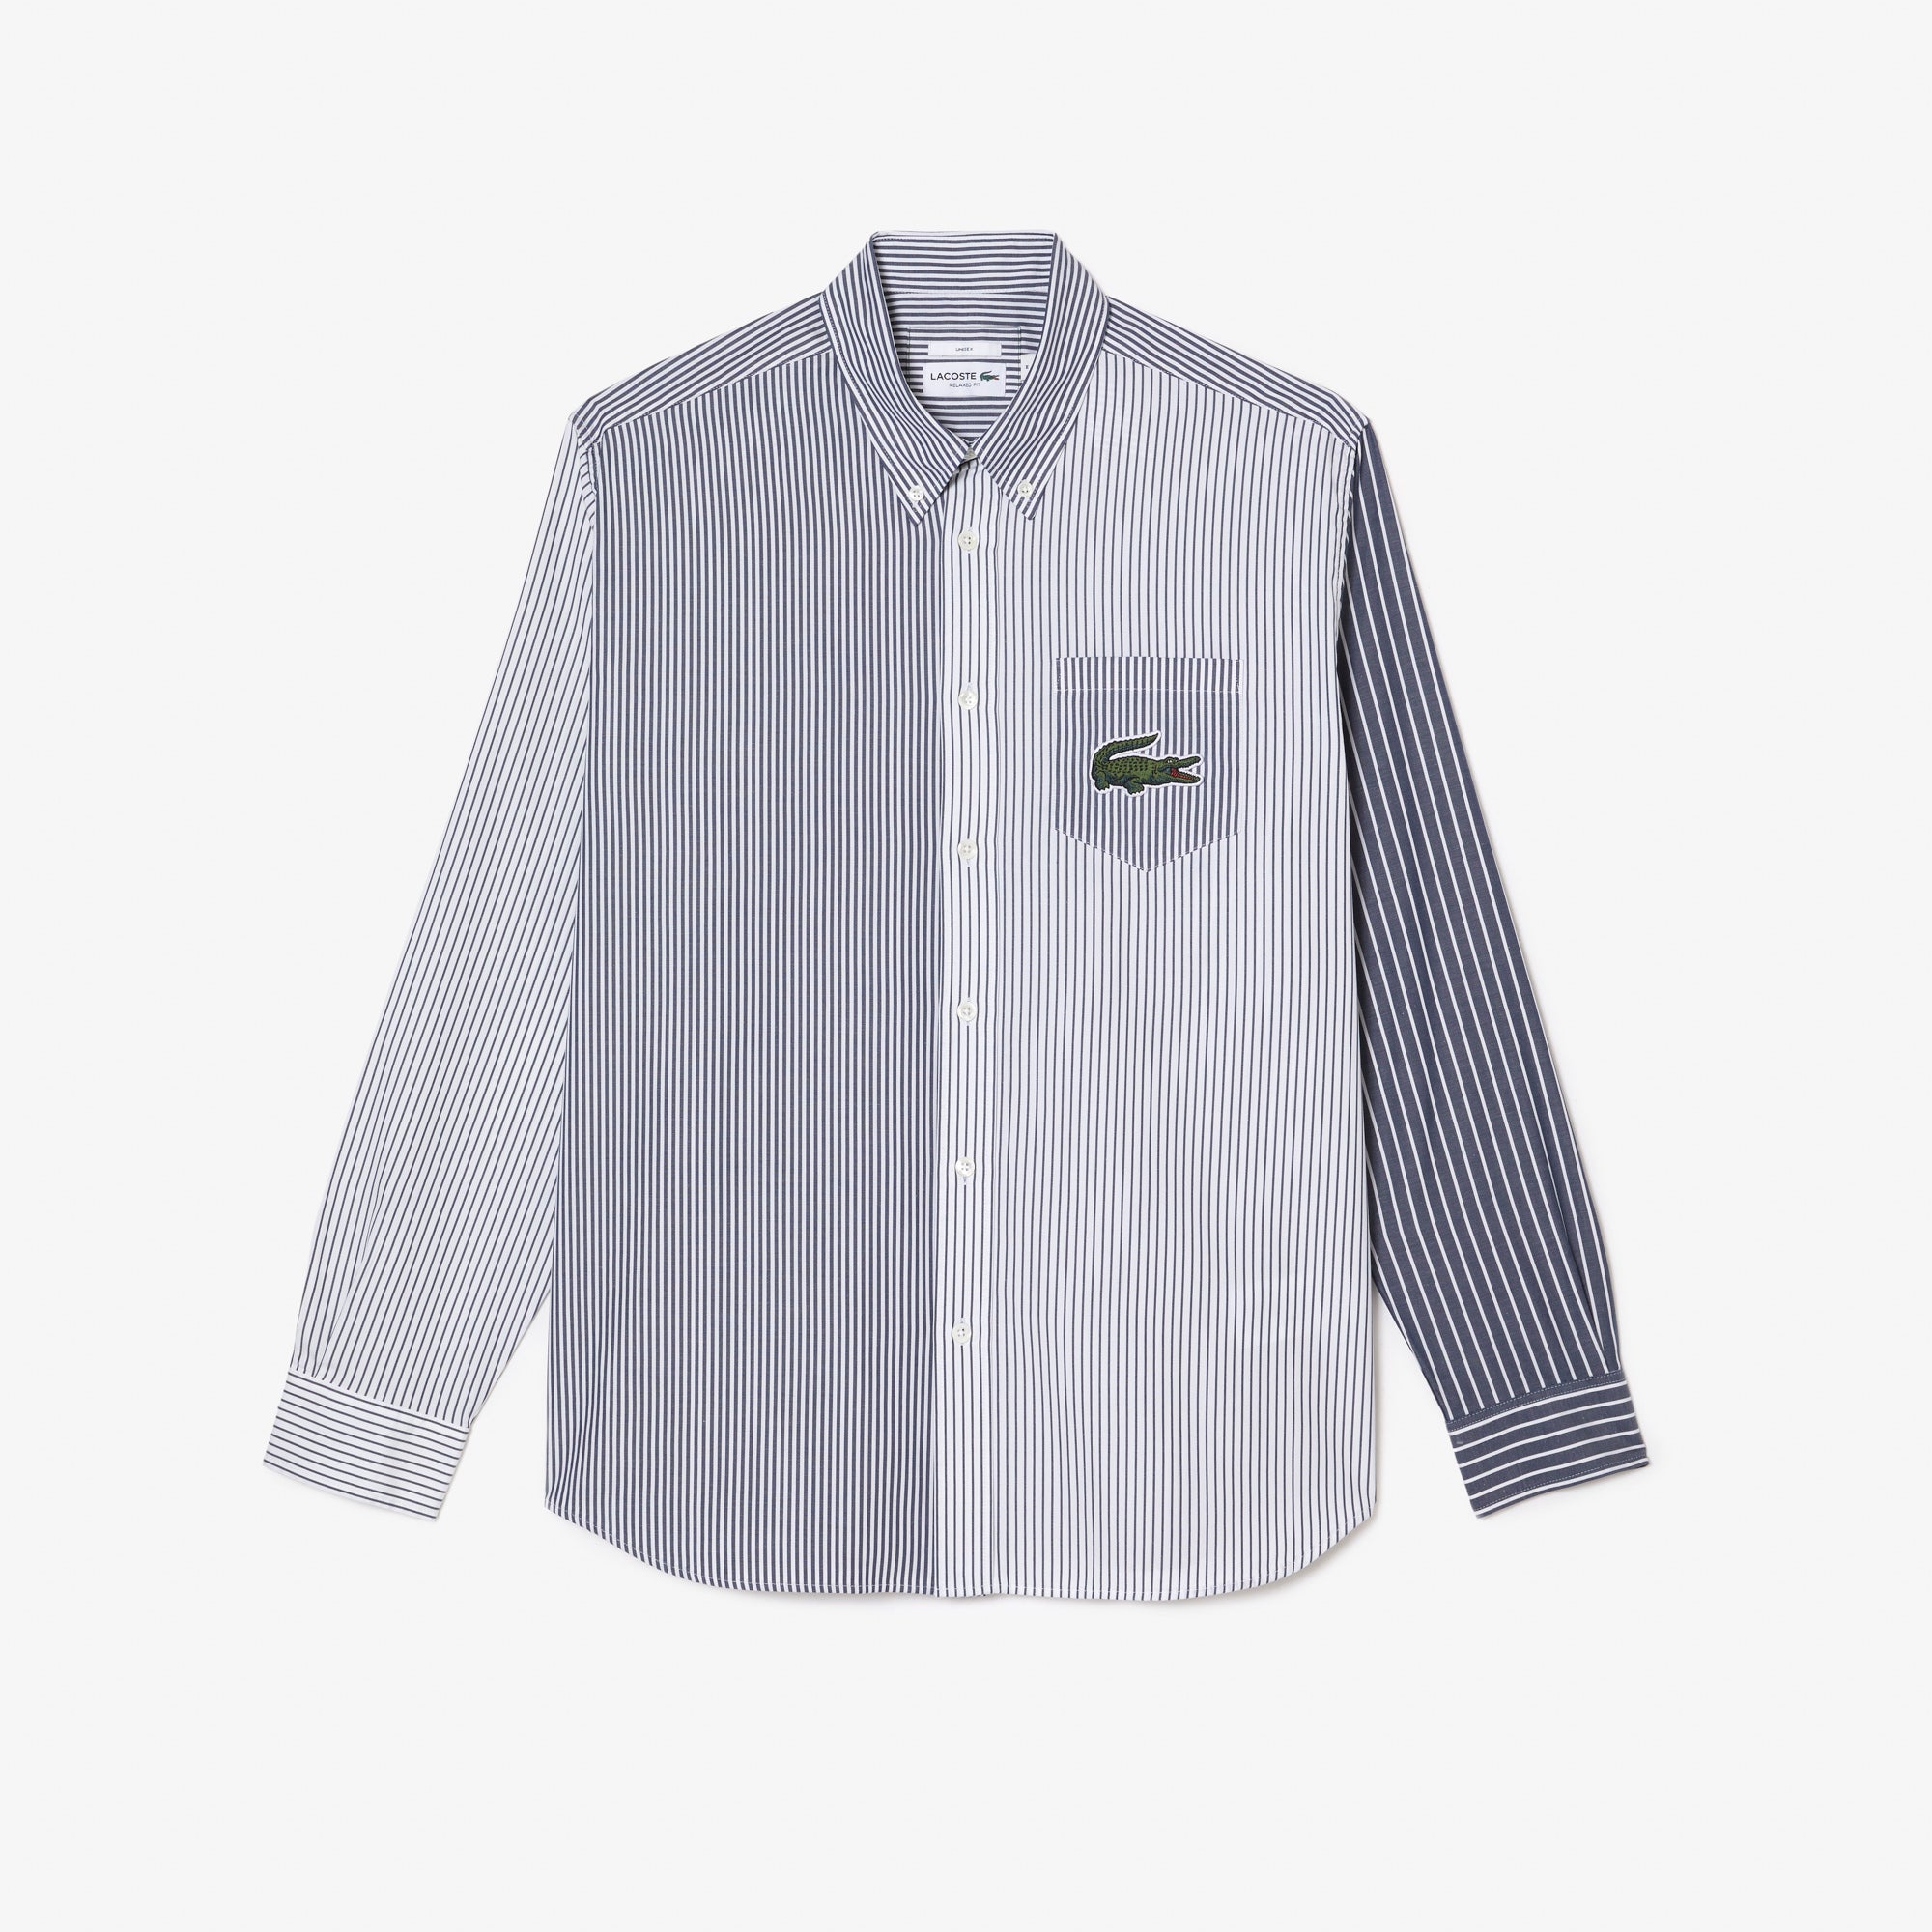 Unisex Large Croc Striped Cotton Shirt – GRAPEFRUIT